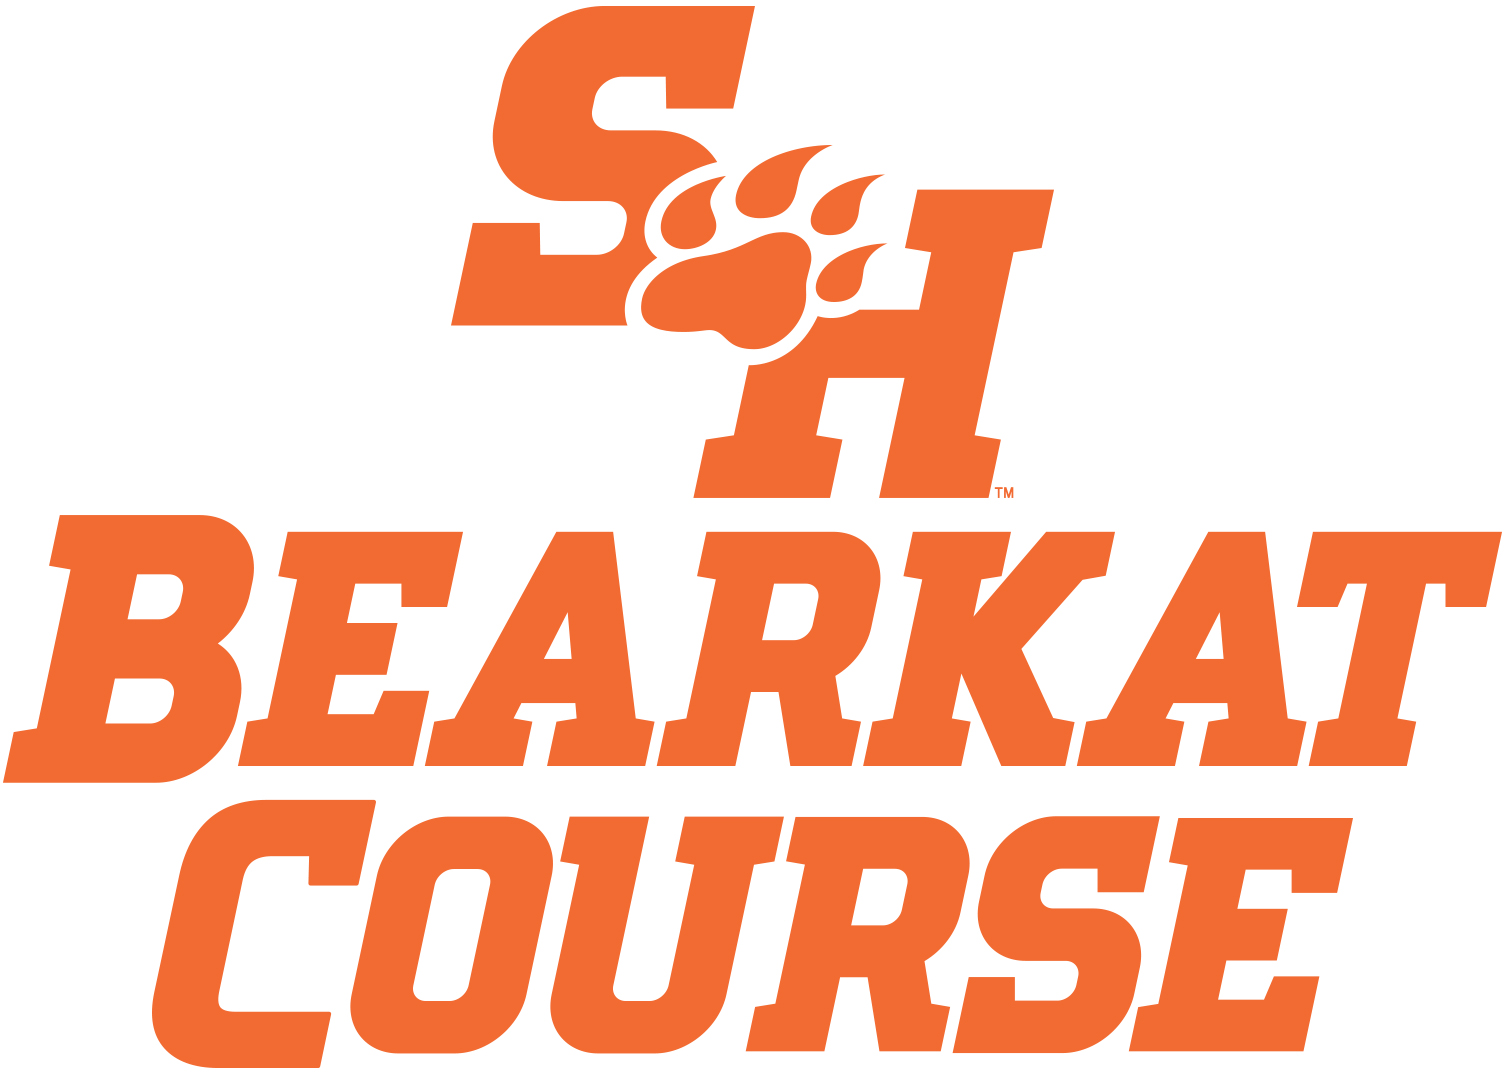 Bearkat Course TM